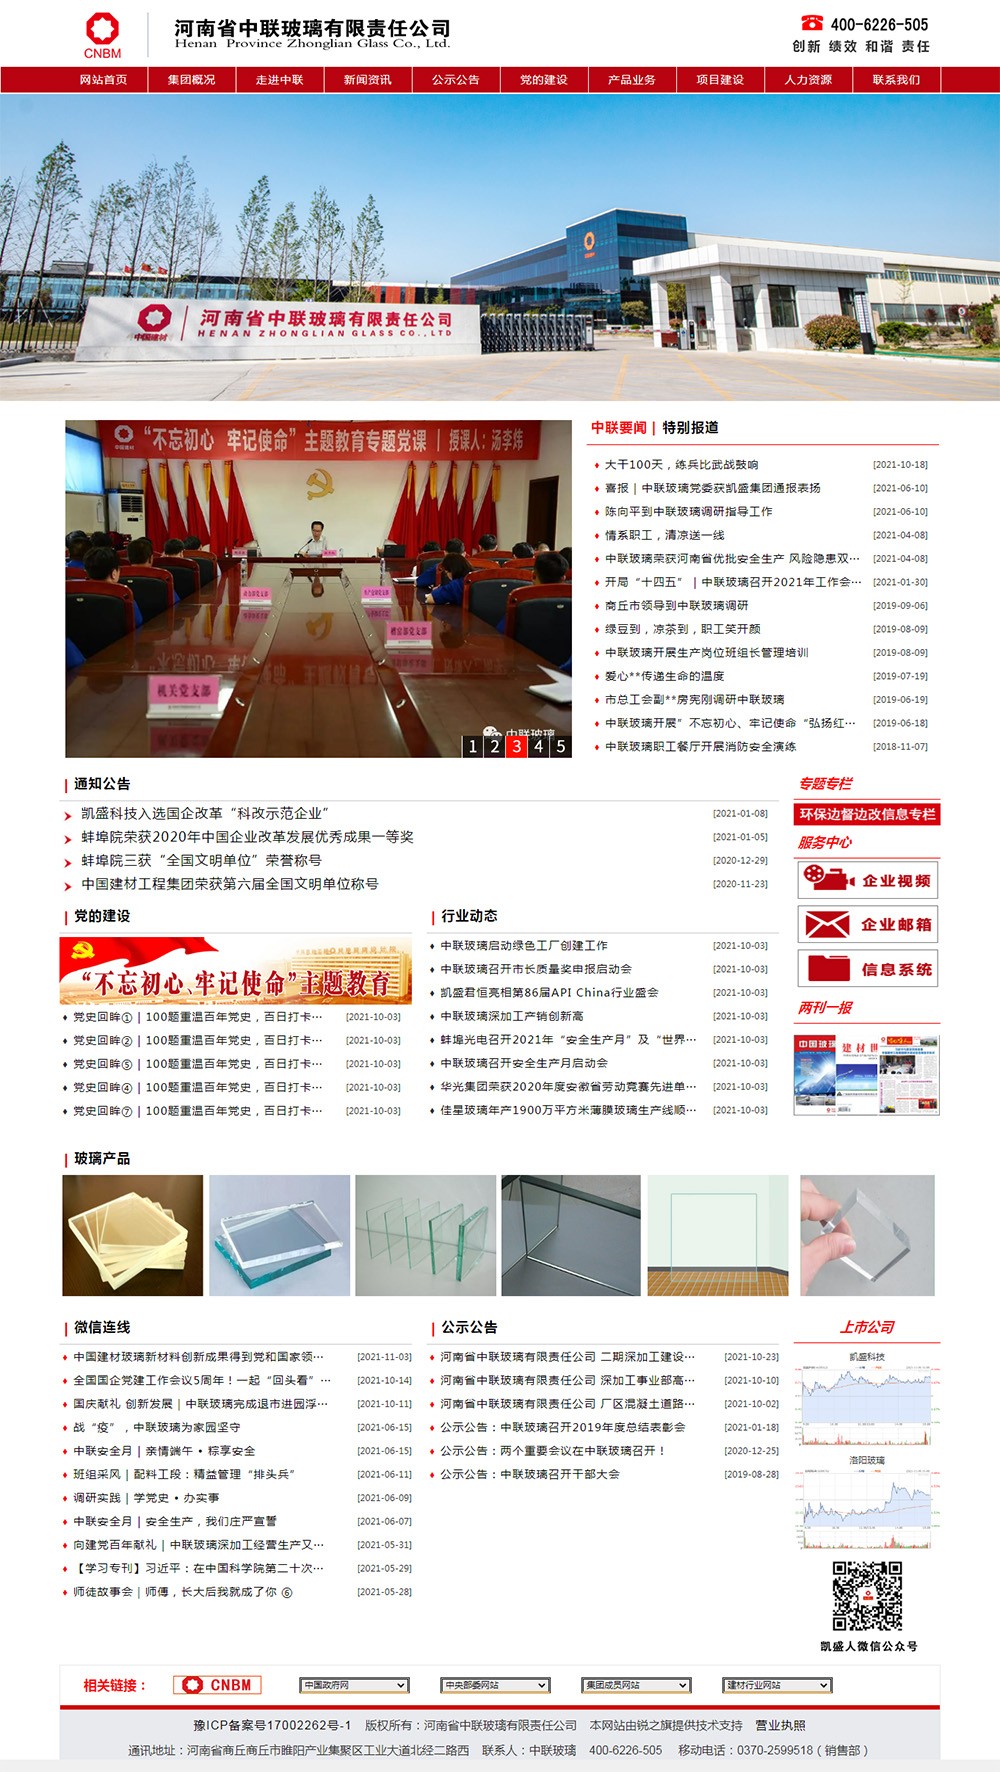 首页 - 河南省中联玻璃有限责任公司.jpg